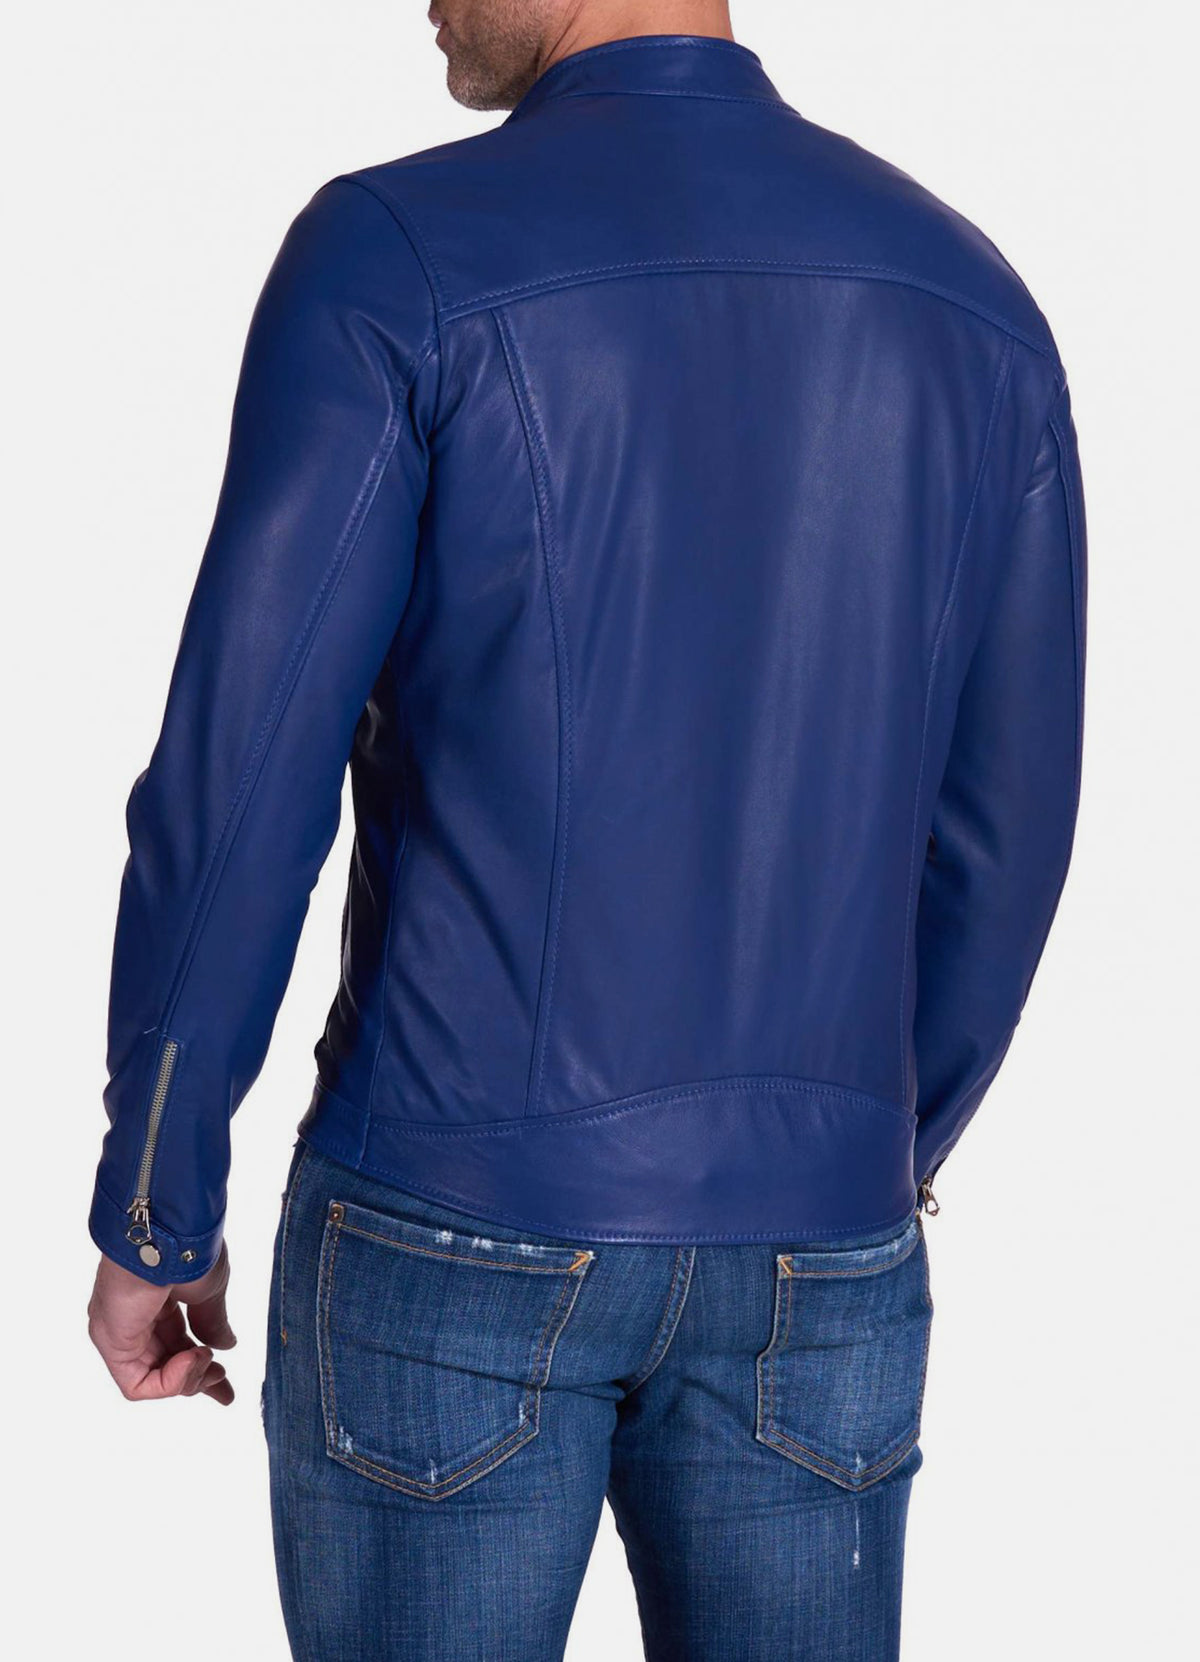 Mens Ink Blue Biker Leather Jacket